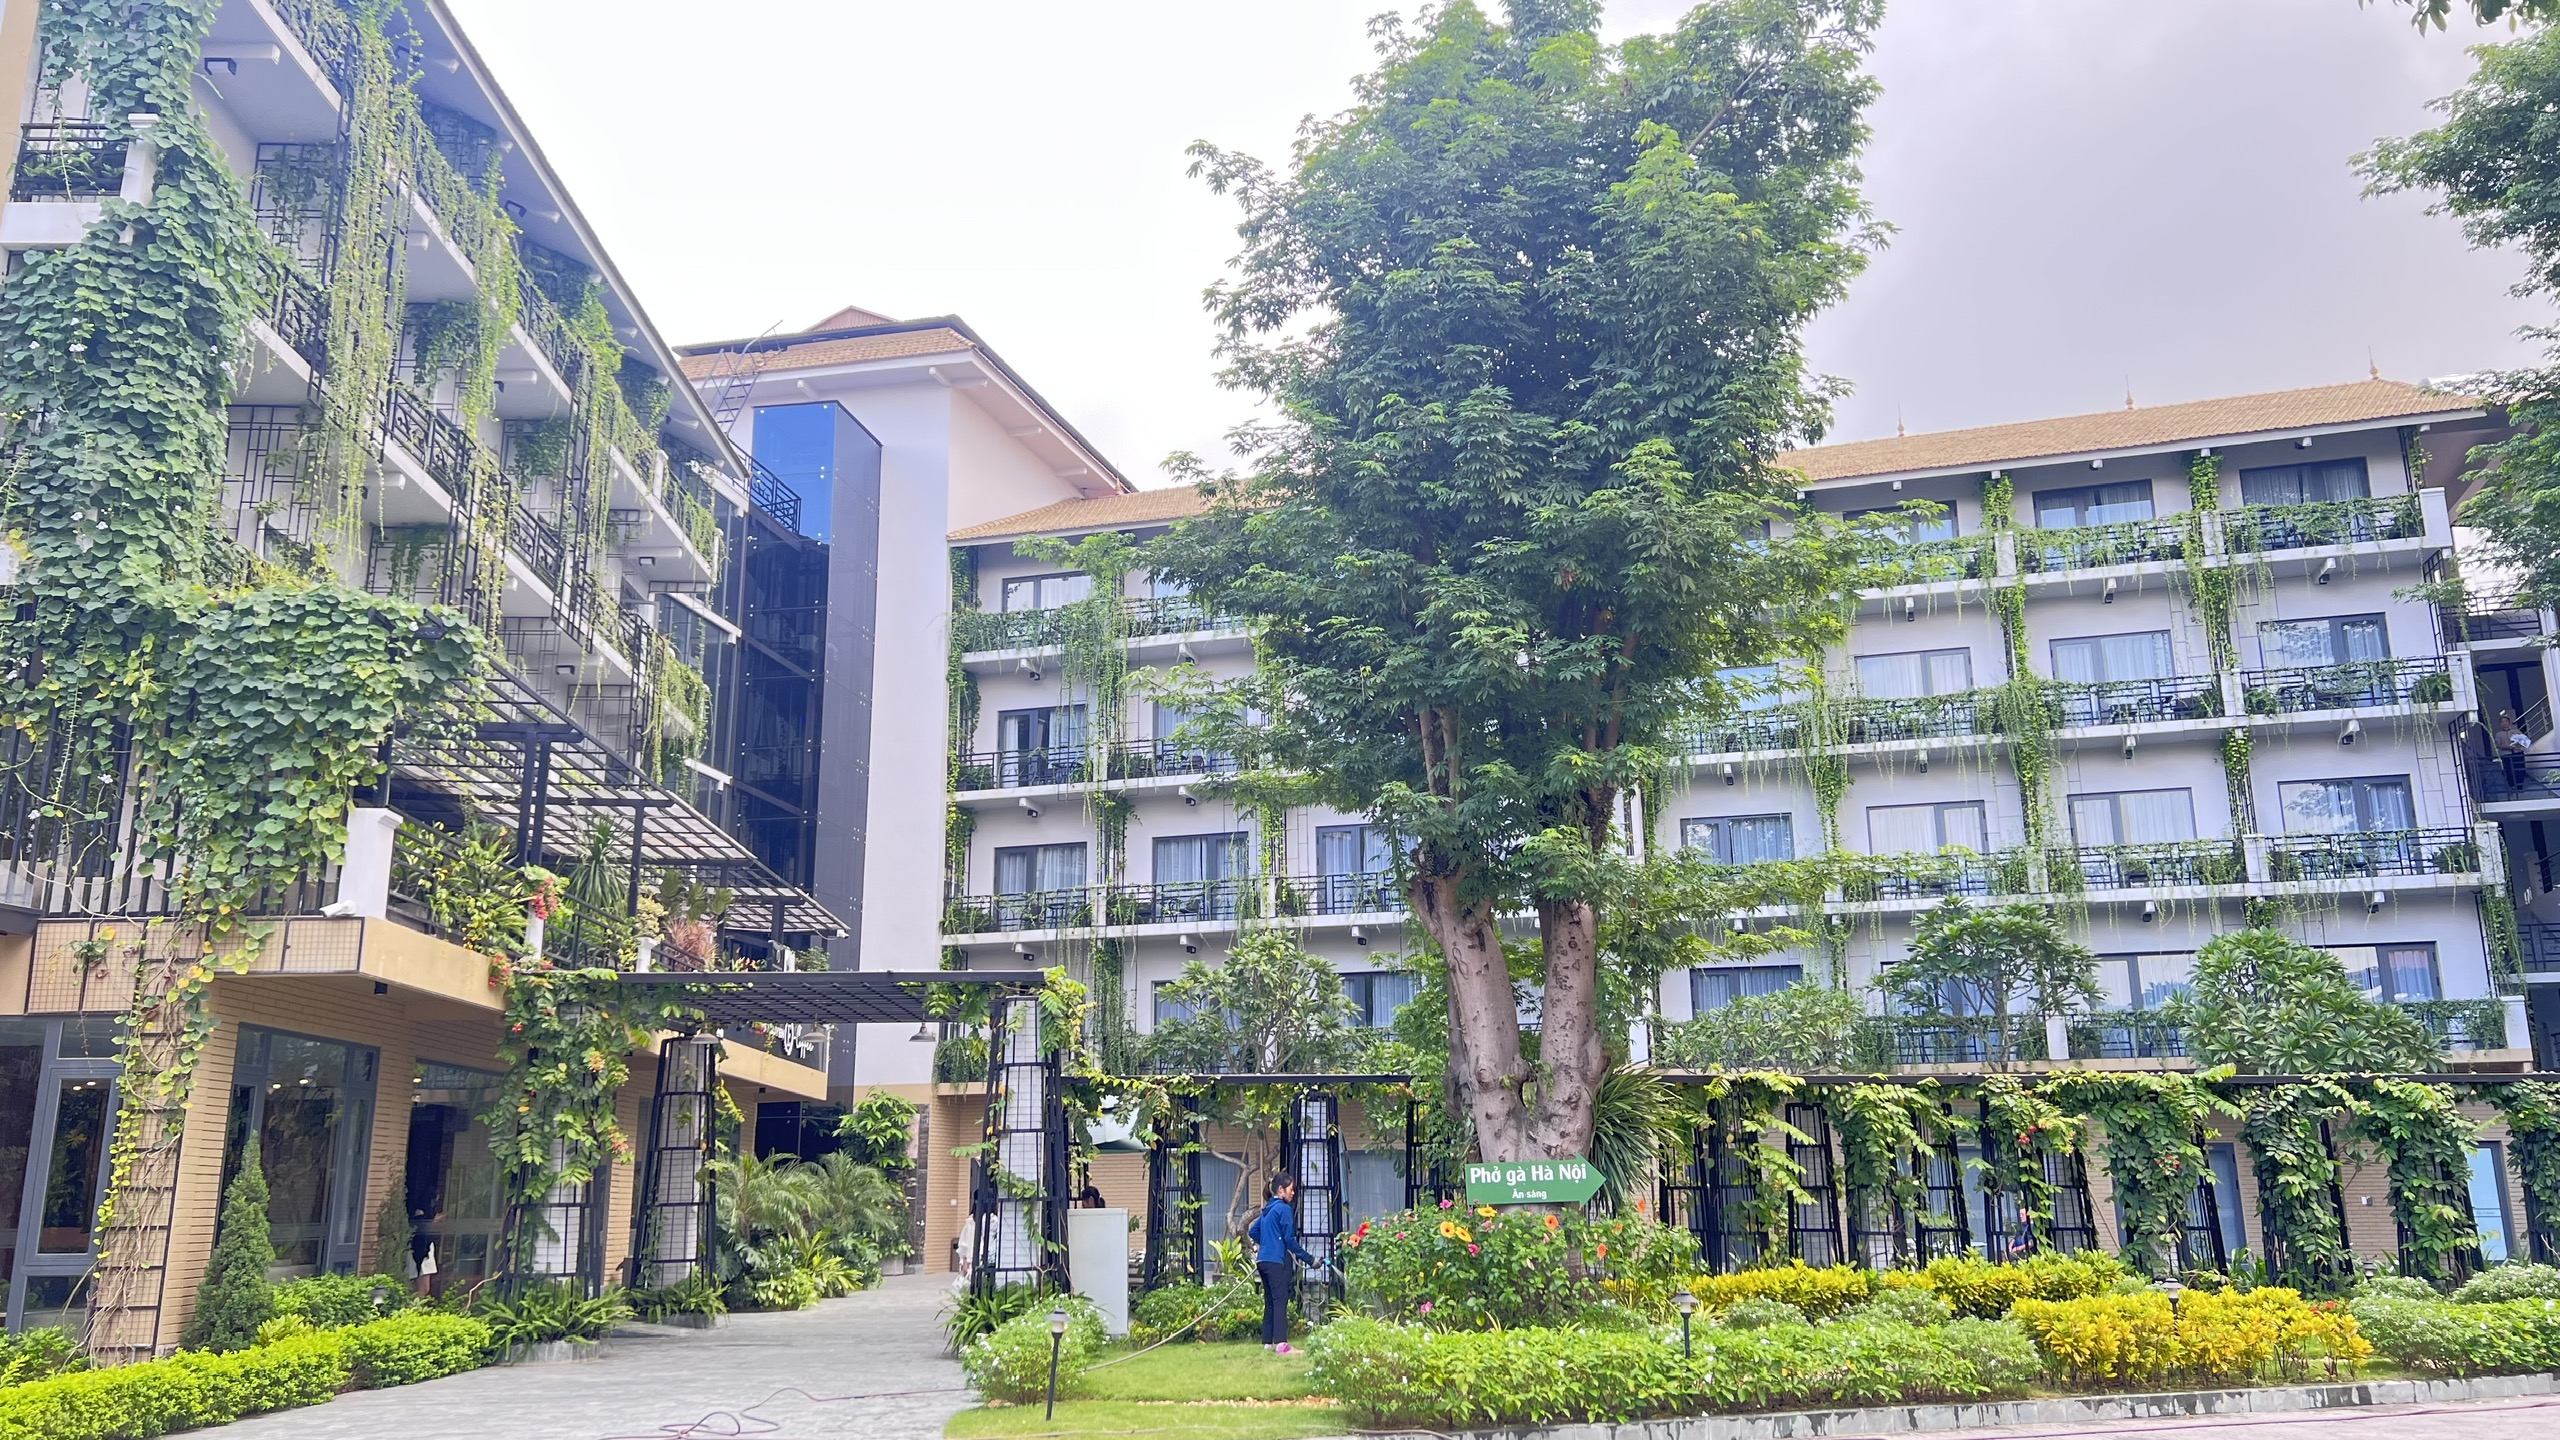 Khách sạn Thái Nguyên có nhà hàng - X Hotel sở hữu khuôn viên xanh thơ mộng rộng 3000m2